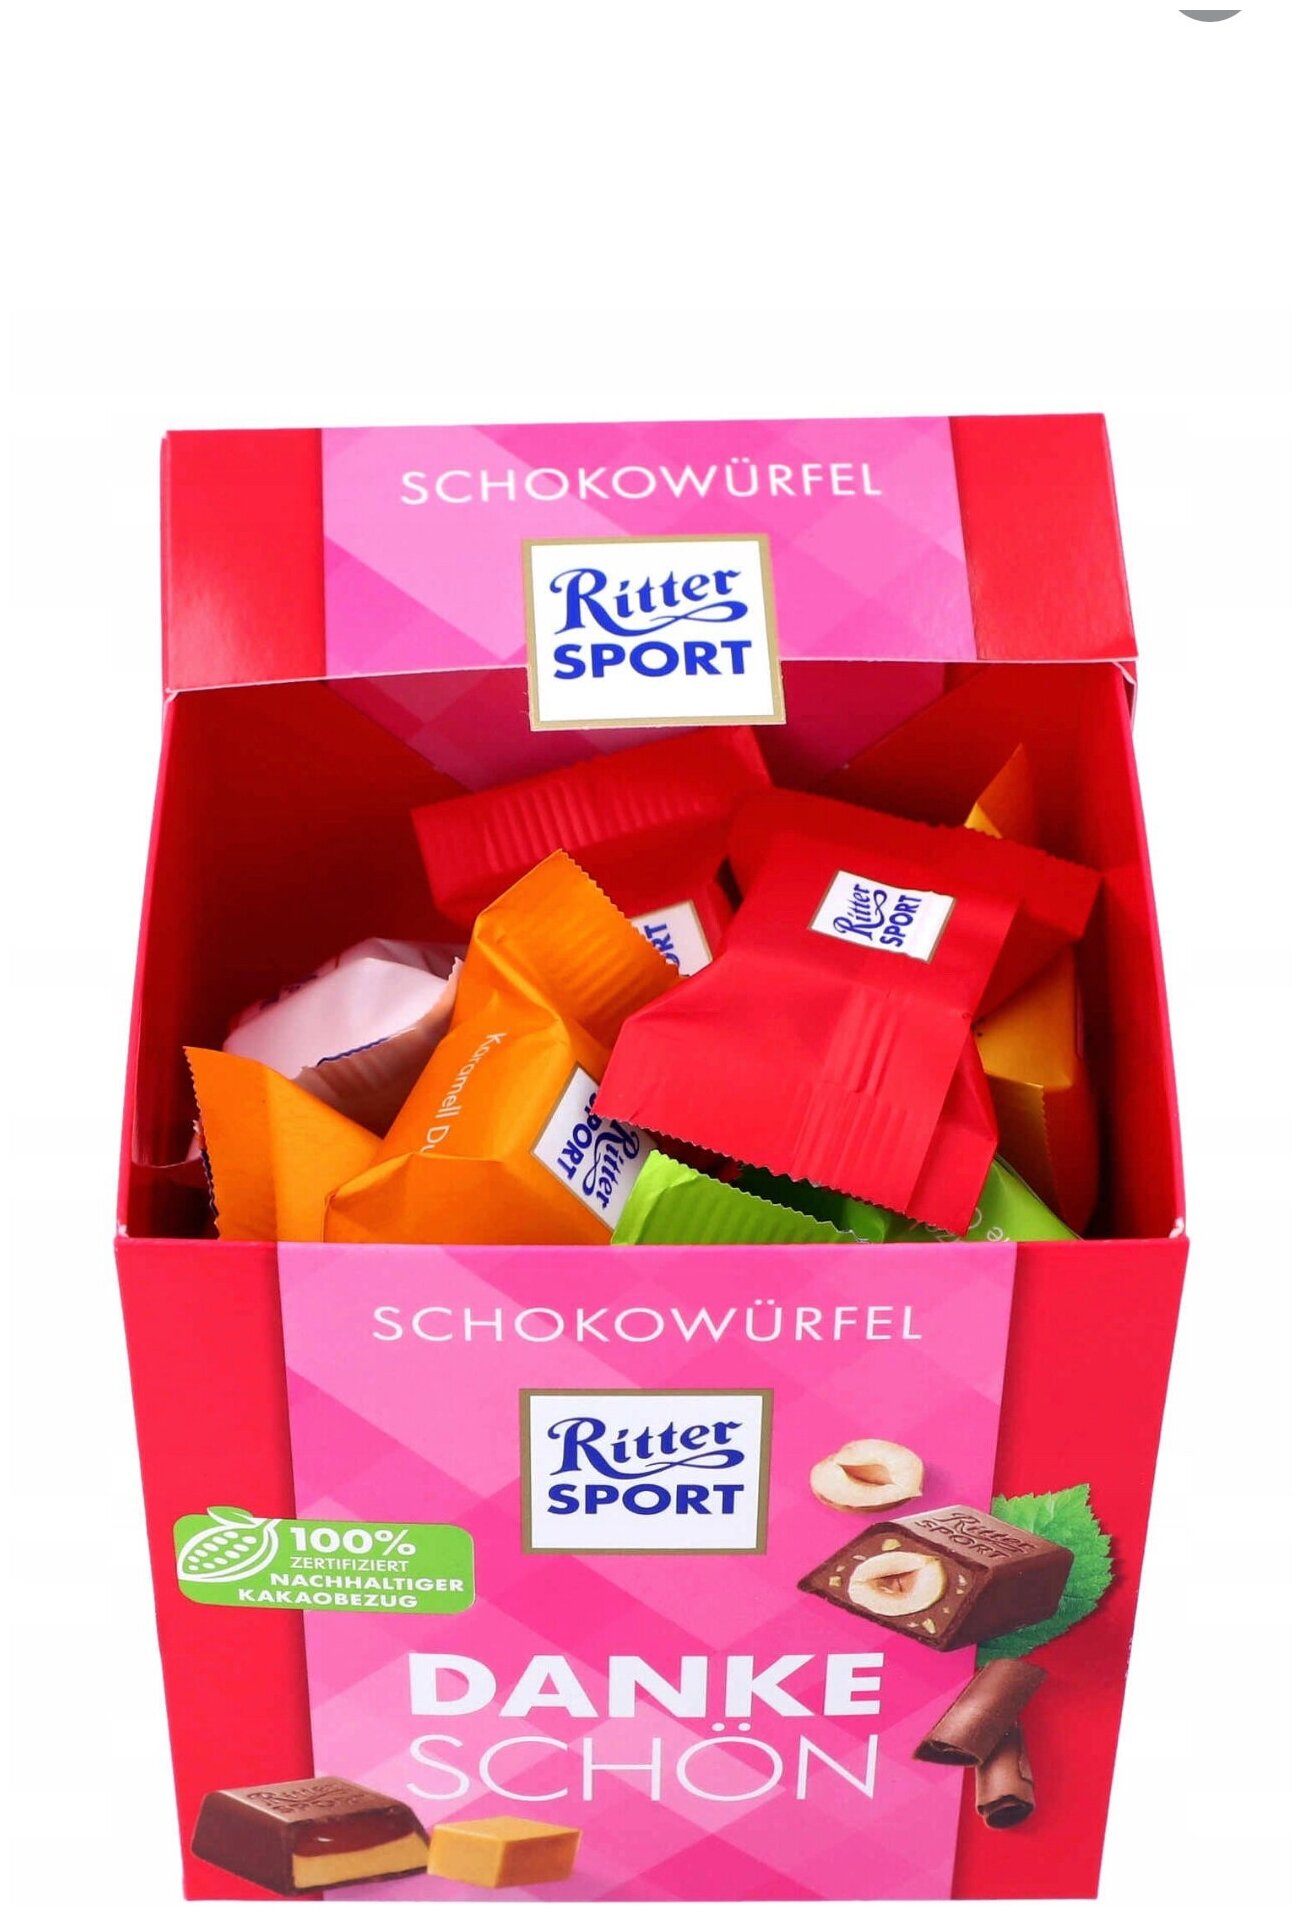 Набор мини-шоколад Ritter sport DANKE SCHON, Шоколадные конфеты ассорти (Германия), 176гр - фотография № 2